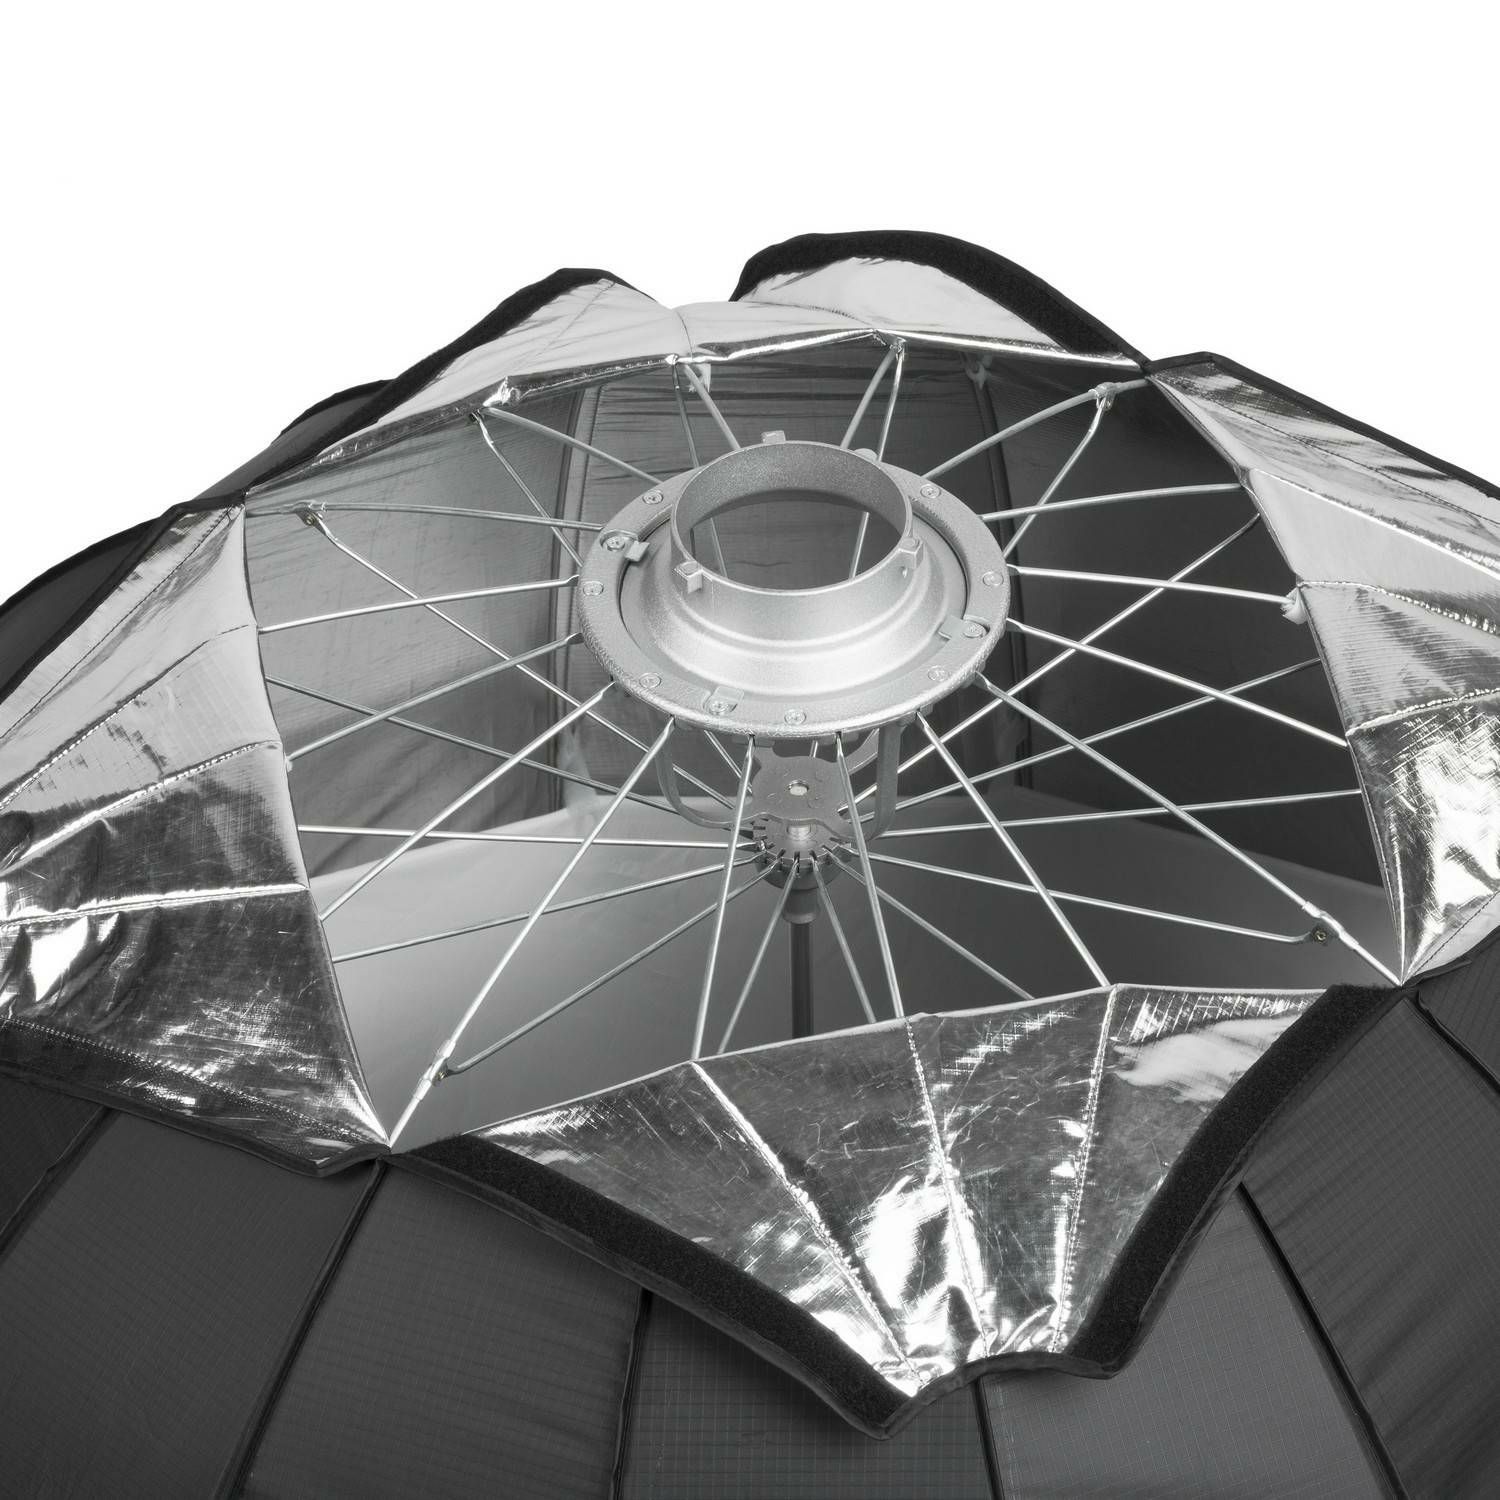 Quadralite Parabolic Octa softbox 150cm